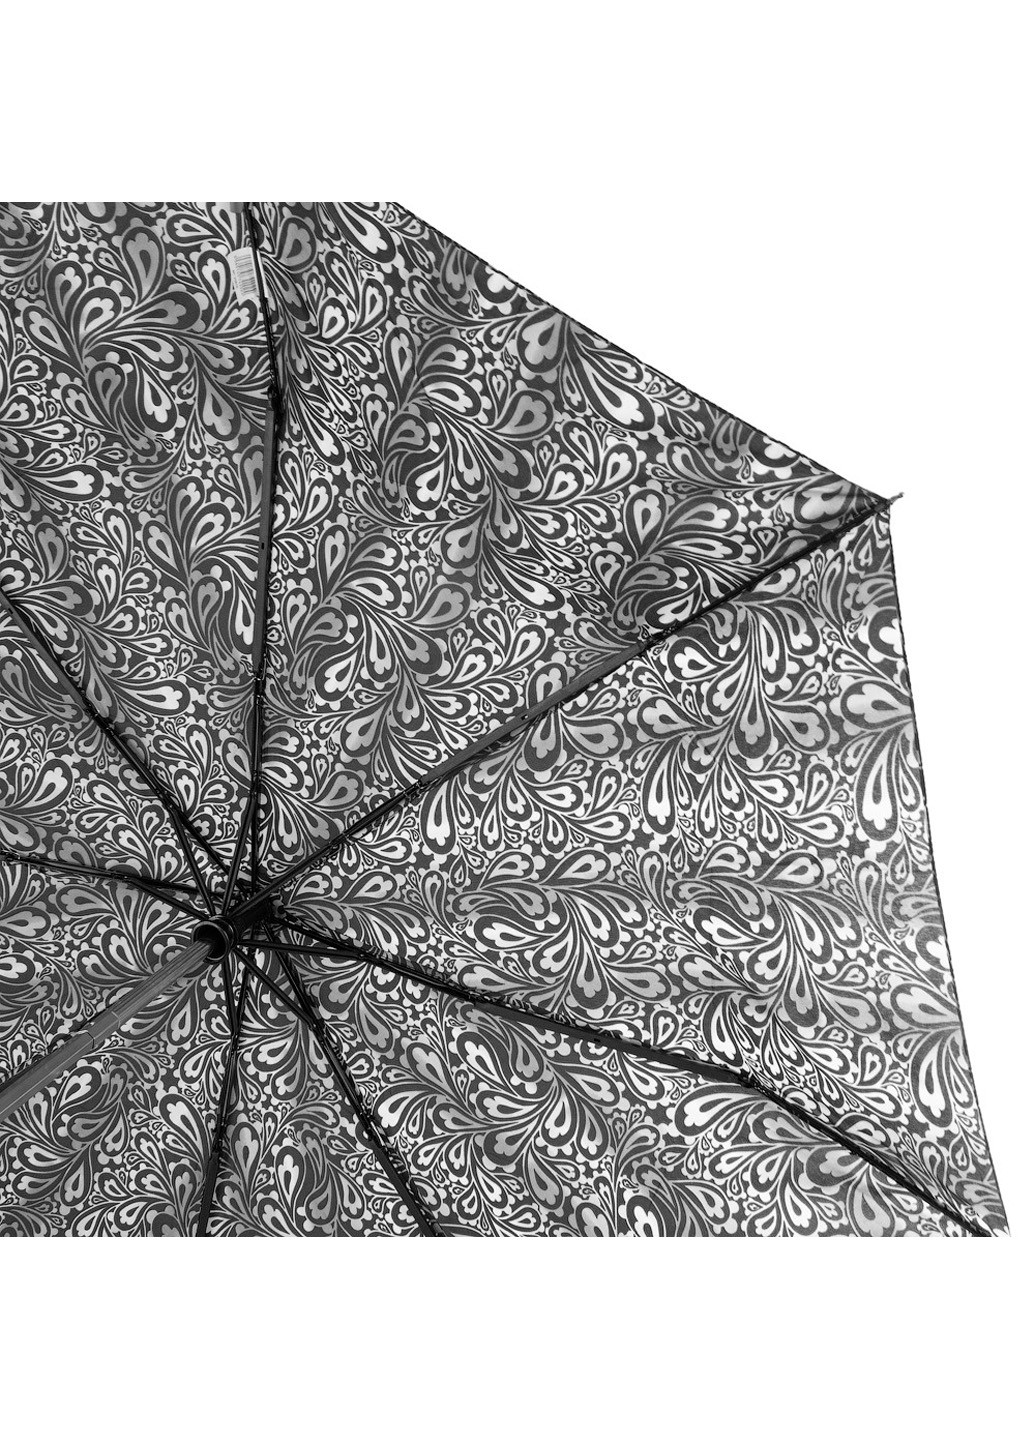 Женский складной зонт полный автомат 98 см Zest (194320848)